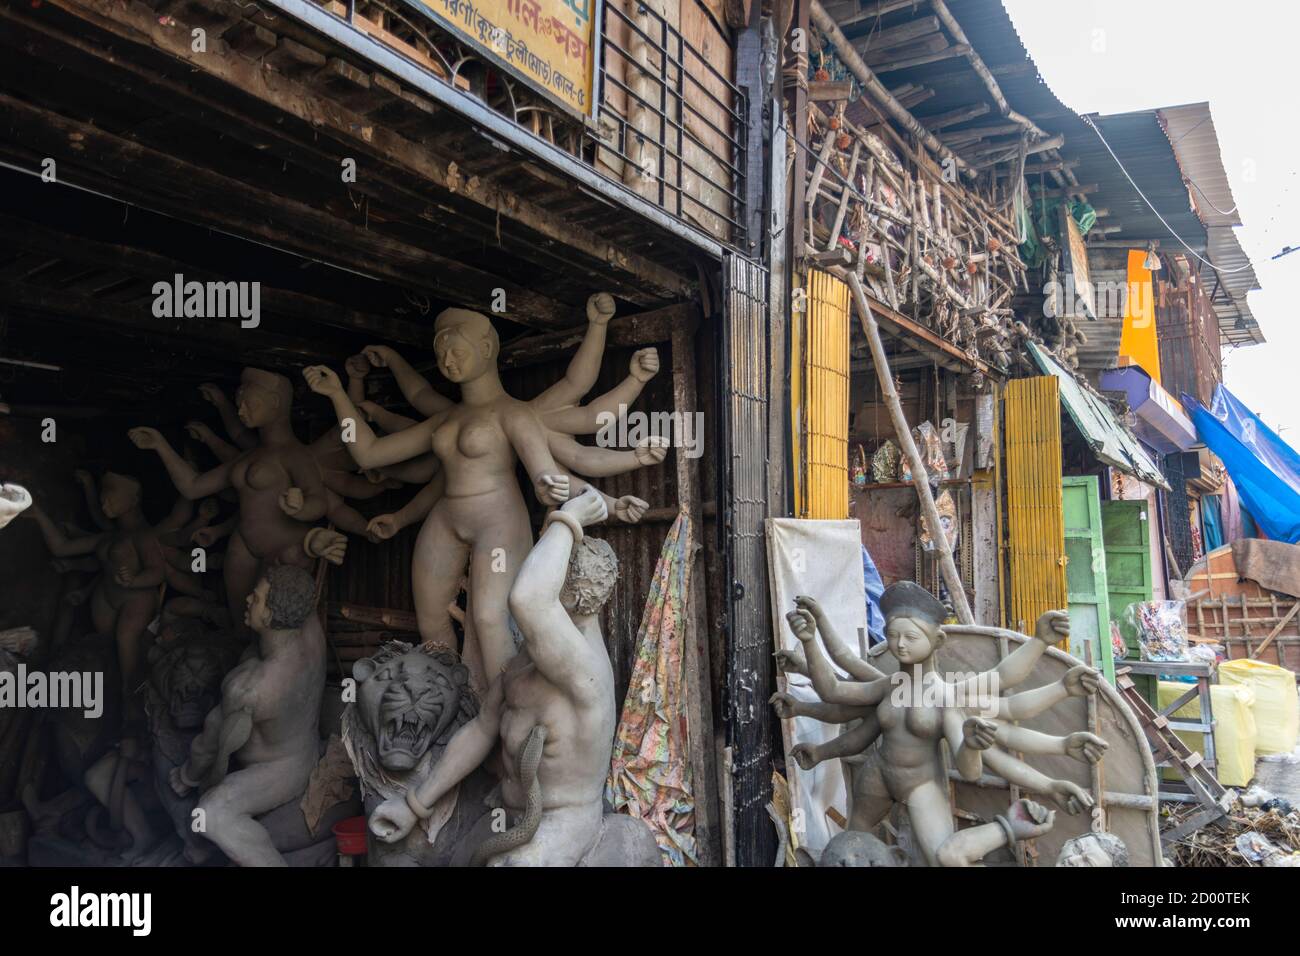 Durga idoli in preparazione per il più grande festival del Bengala Occidentale nella zona di Kumartuli, che è anche conosciuto come il centro dei vasai di Calcutta Foto Stock